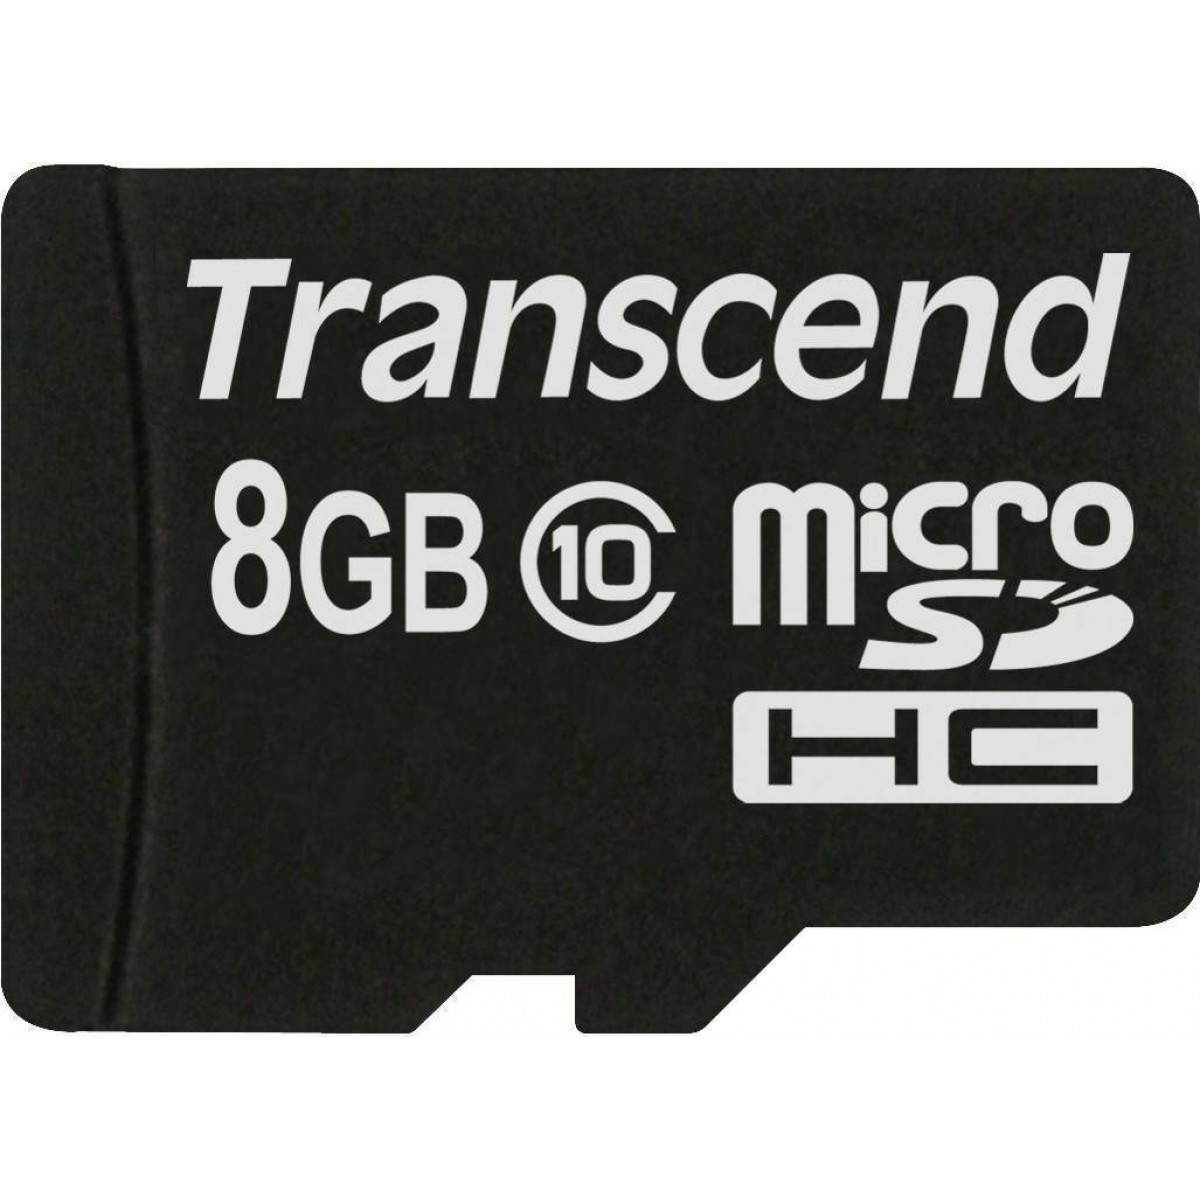 MICRO SDHC TRANSCEND 8GB CLASS 10 TS8GUSDC10